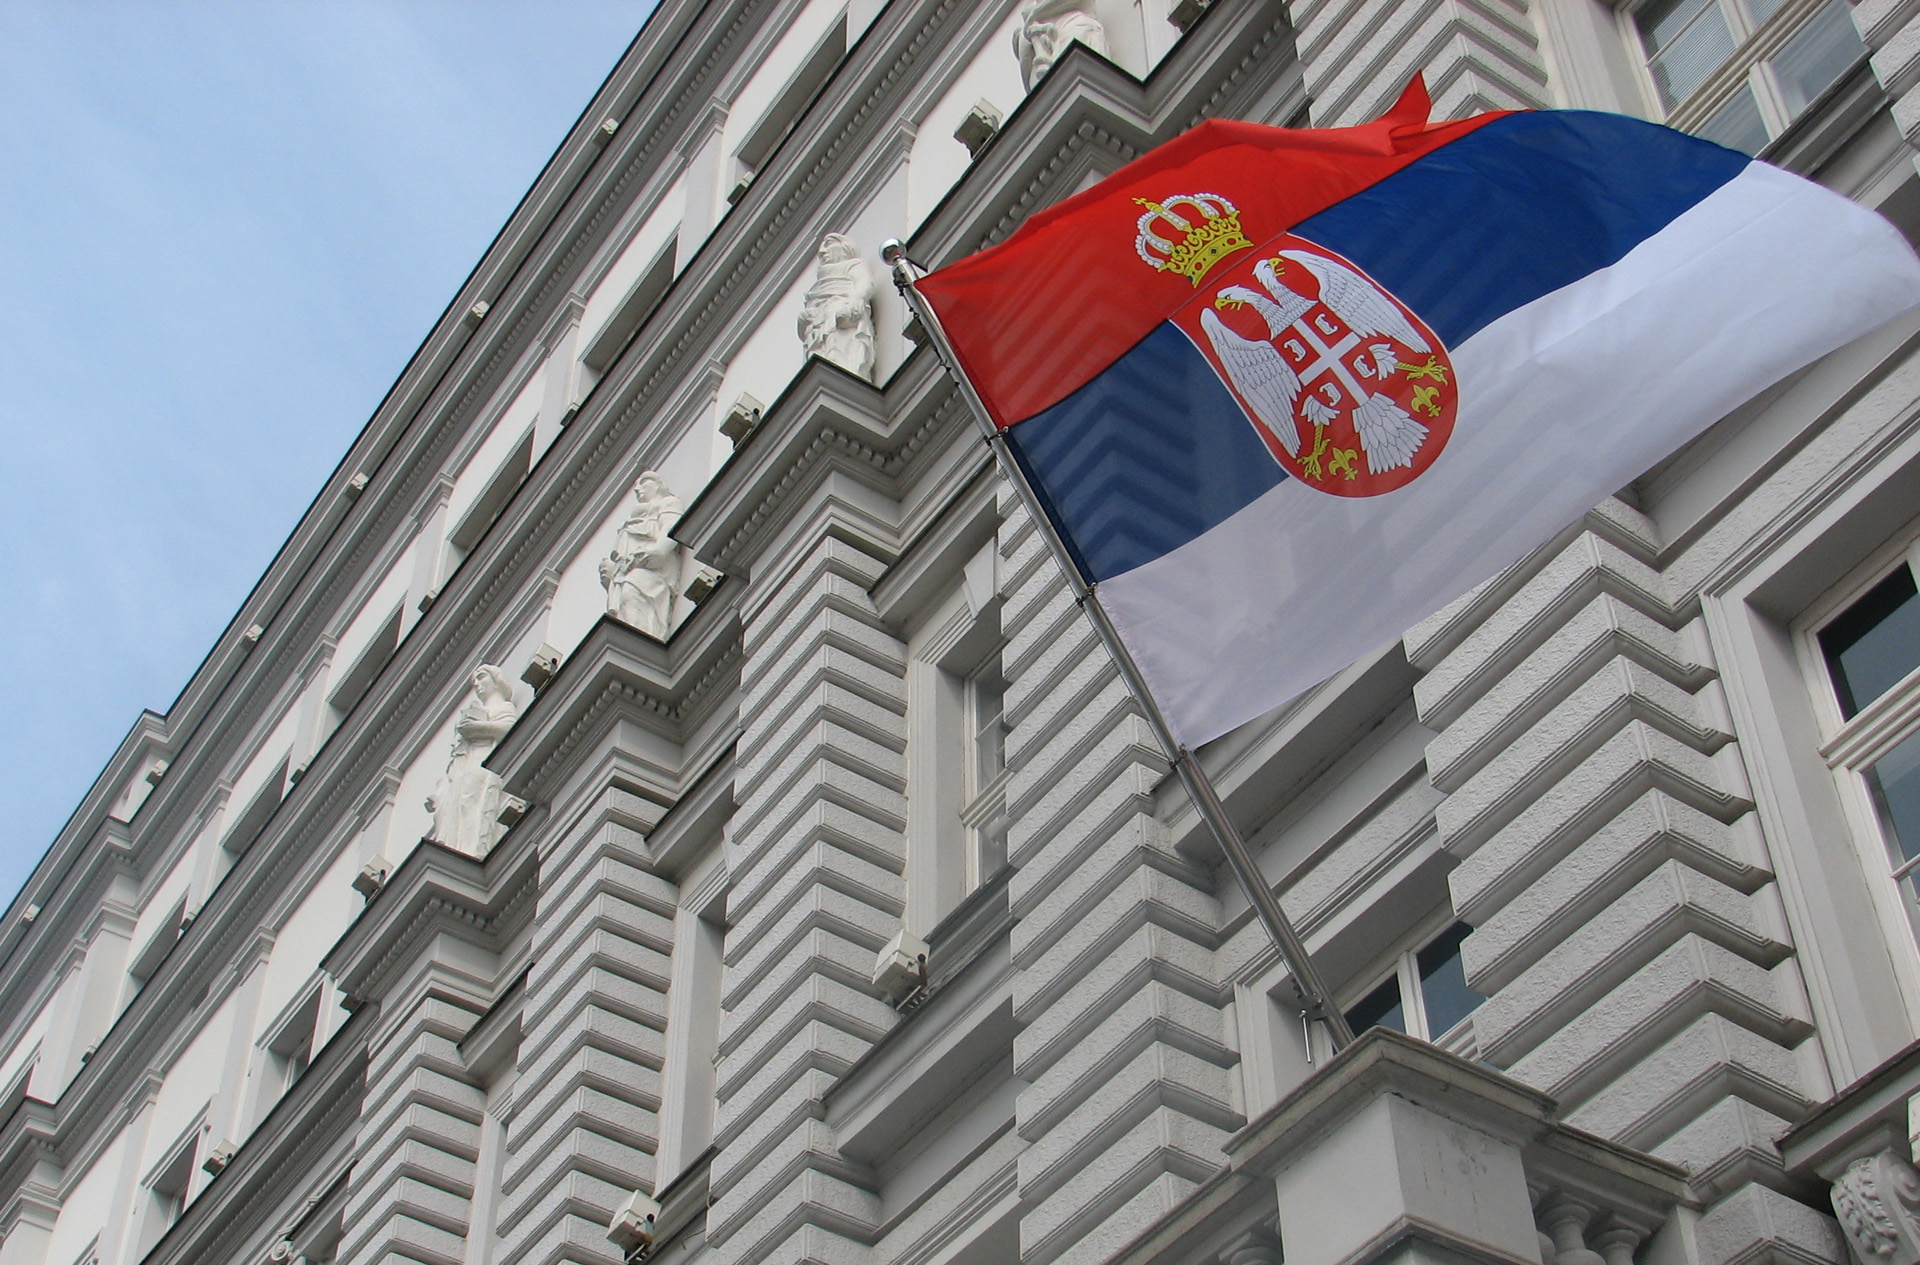 Prelazna pravila o preferencijalnom poreklu robe u Sporazumu o stabilizaciji i pridruživanju između Srbije i EU – primena od 6. decembra 2021. god.